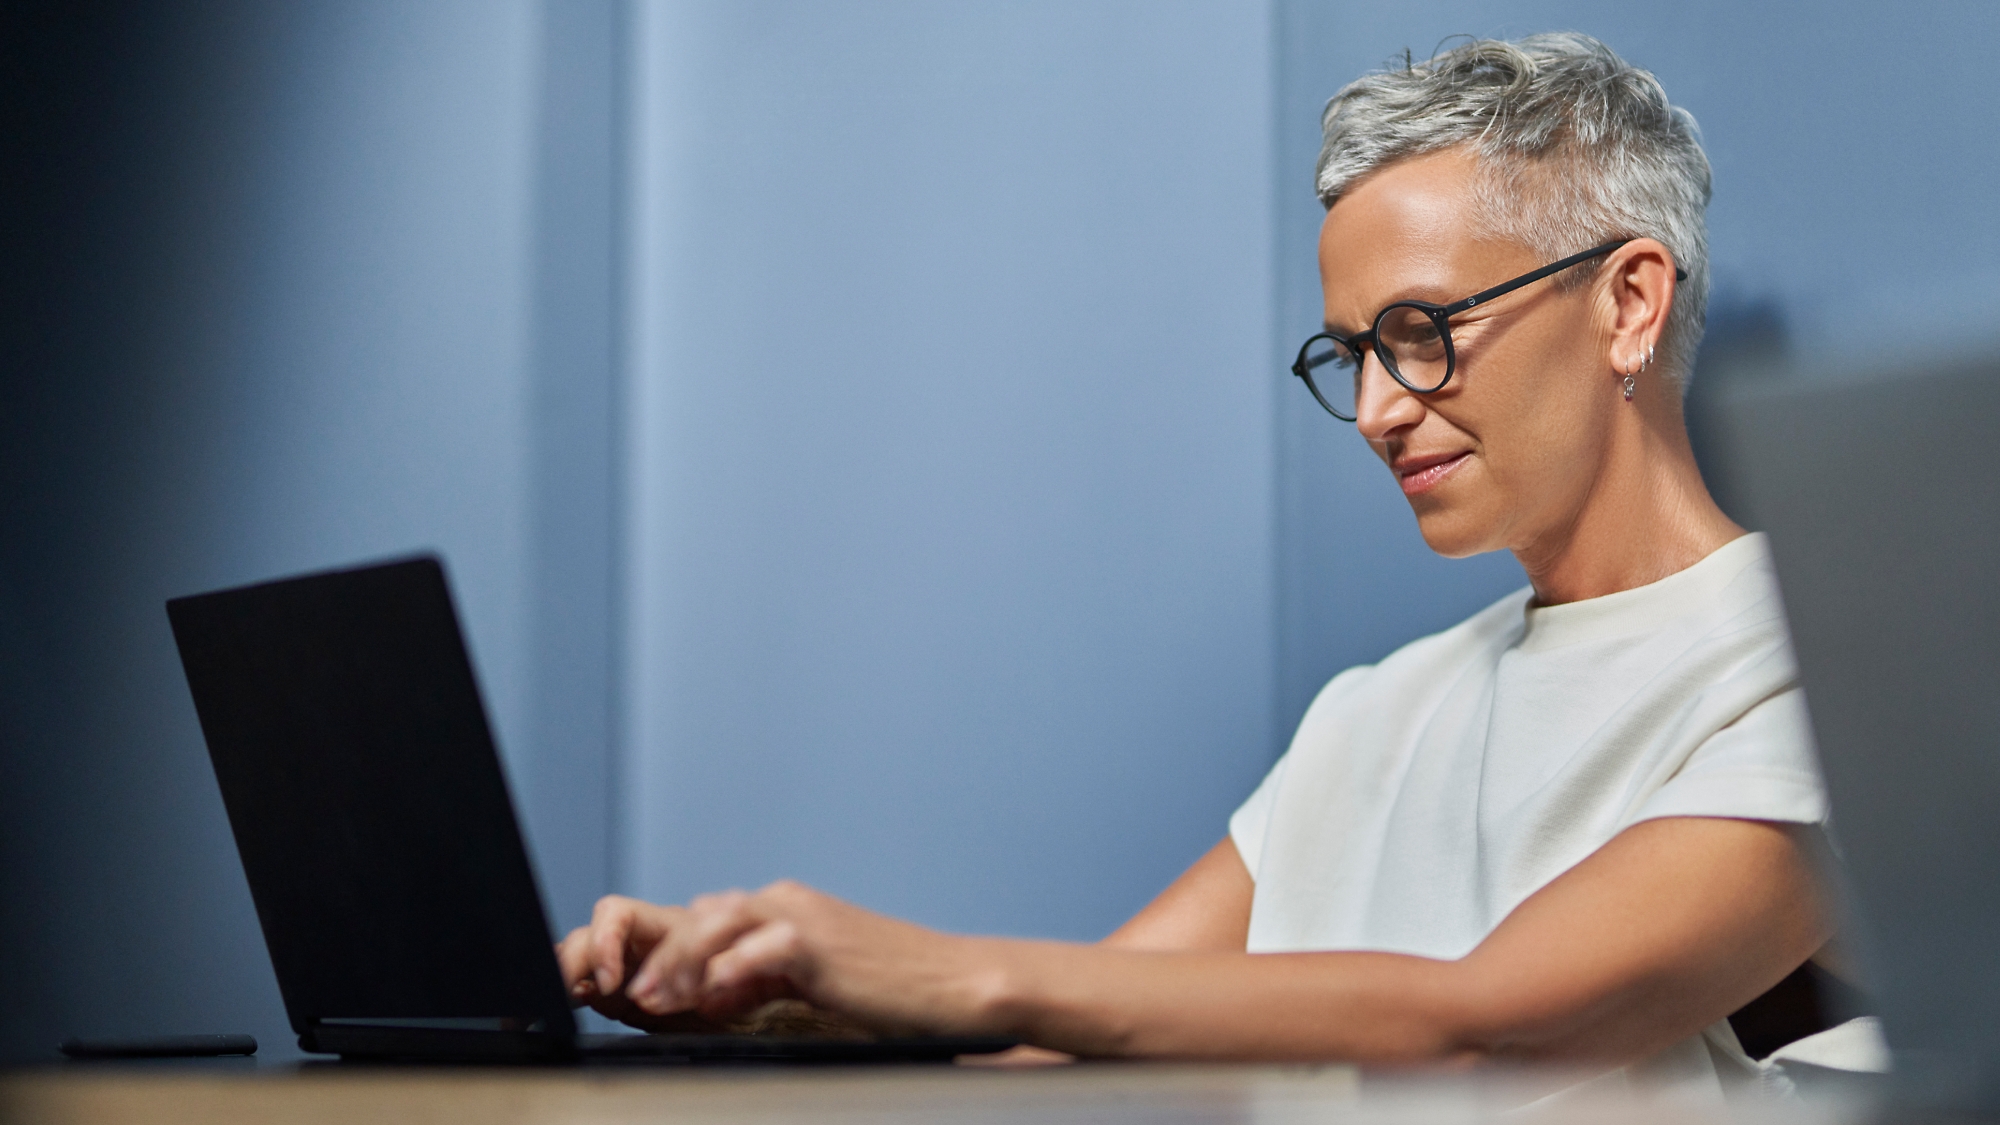 En voksen kvinne med kort grått hår som smiler og arbeider på en bærbar datamaskin i moderne kontormiljø.